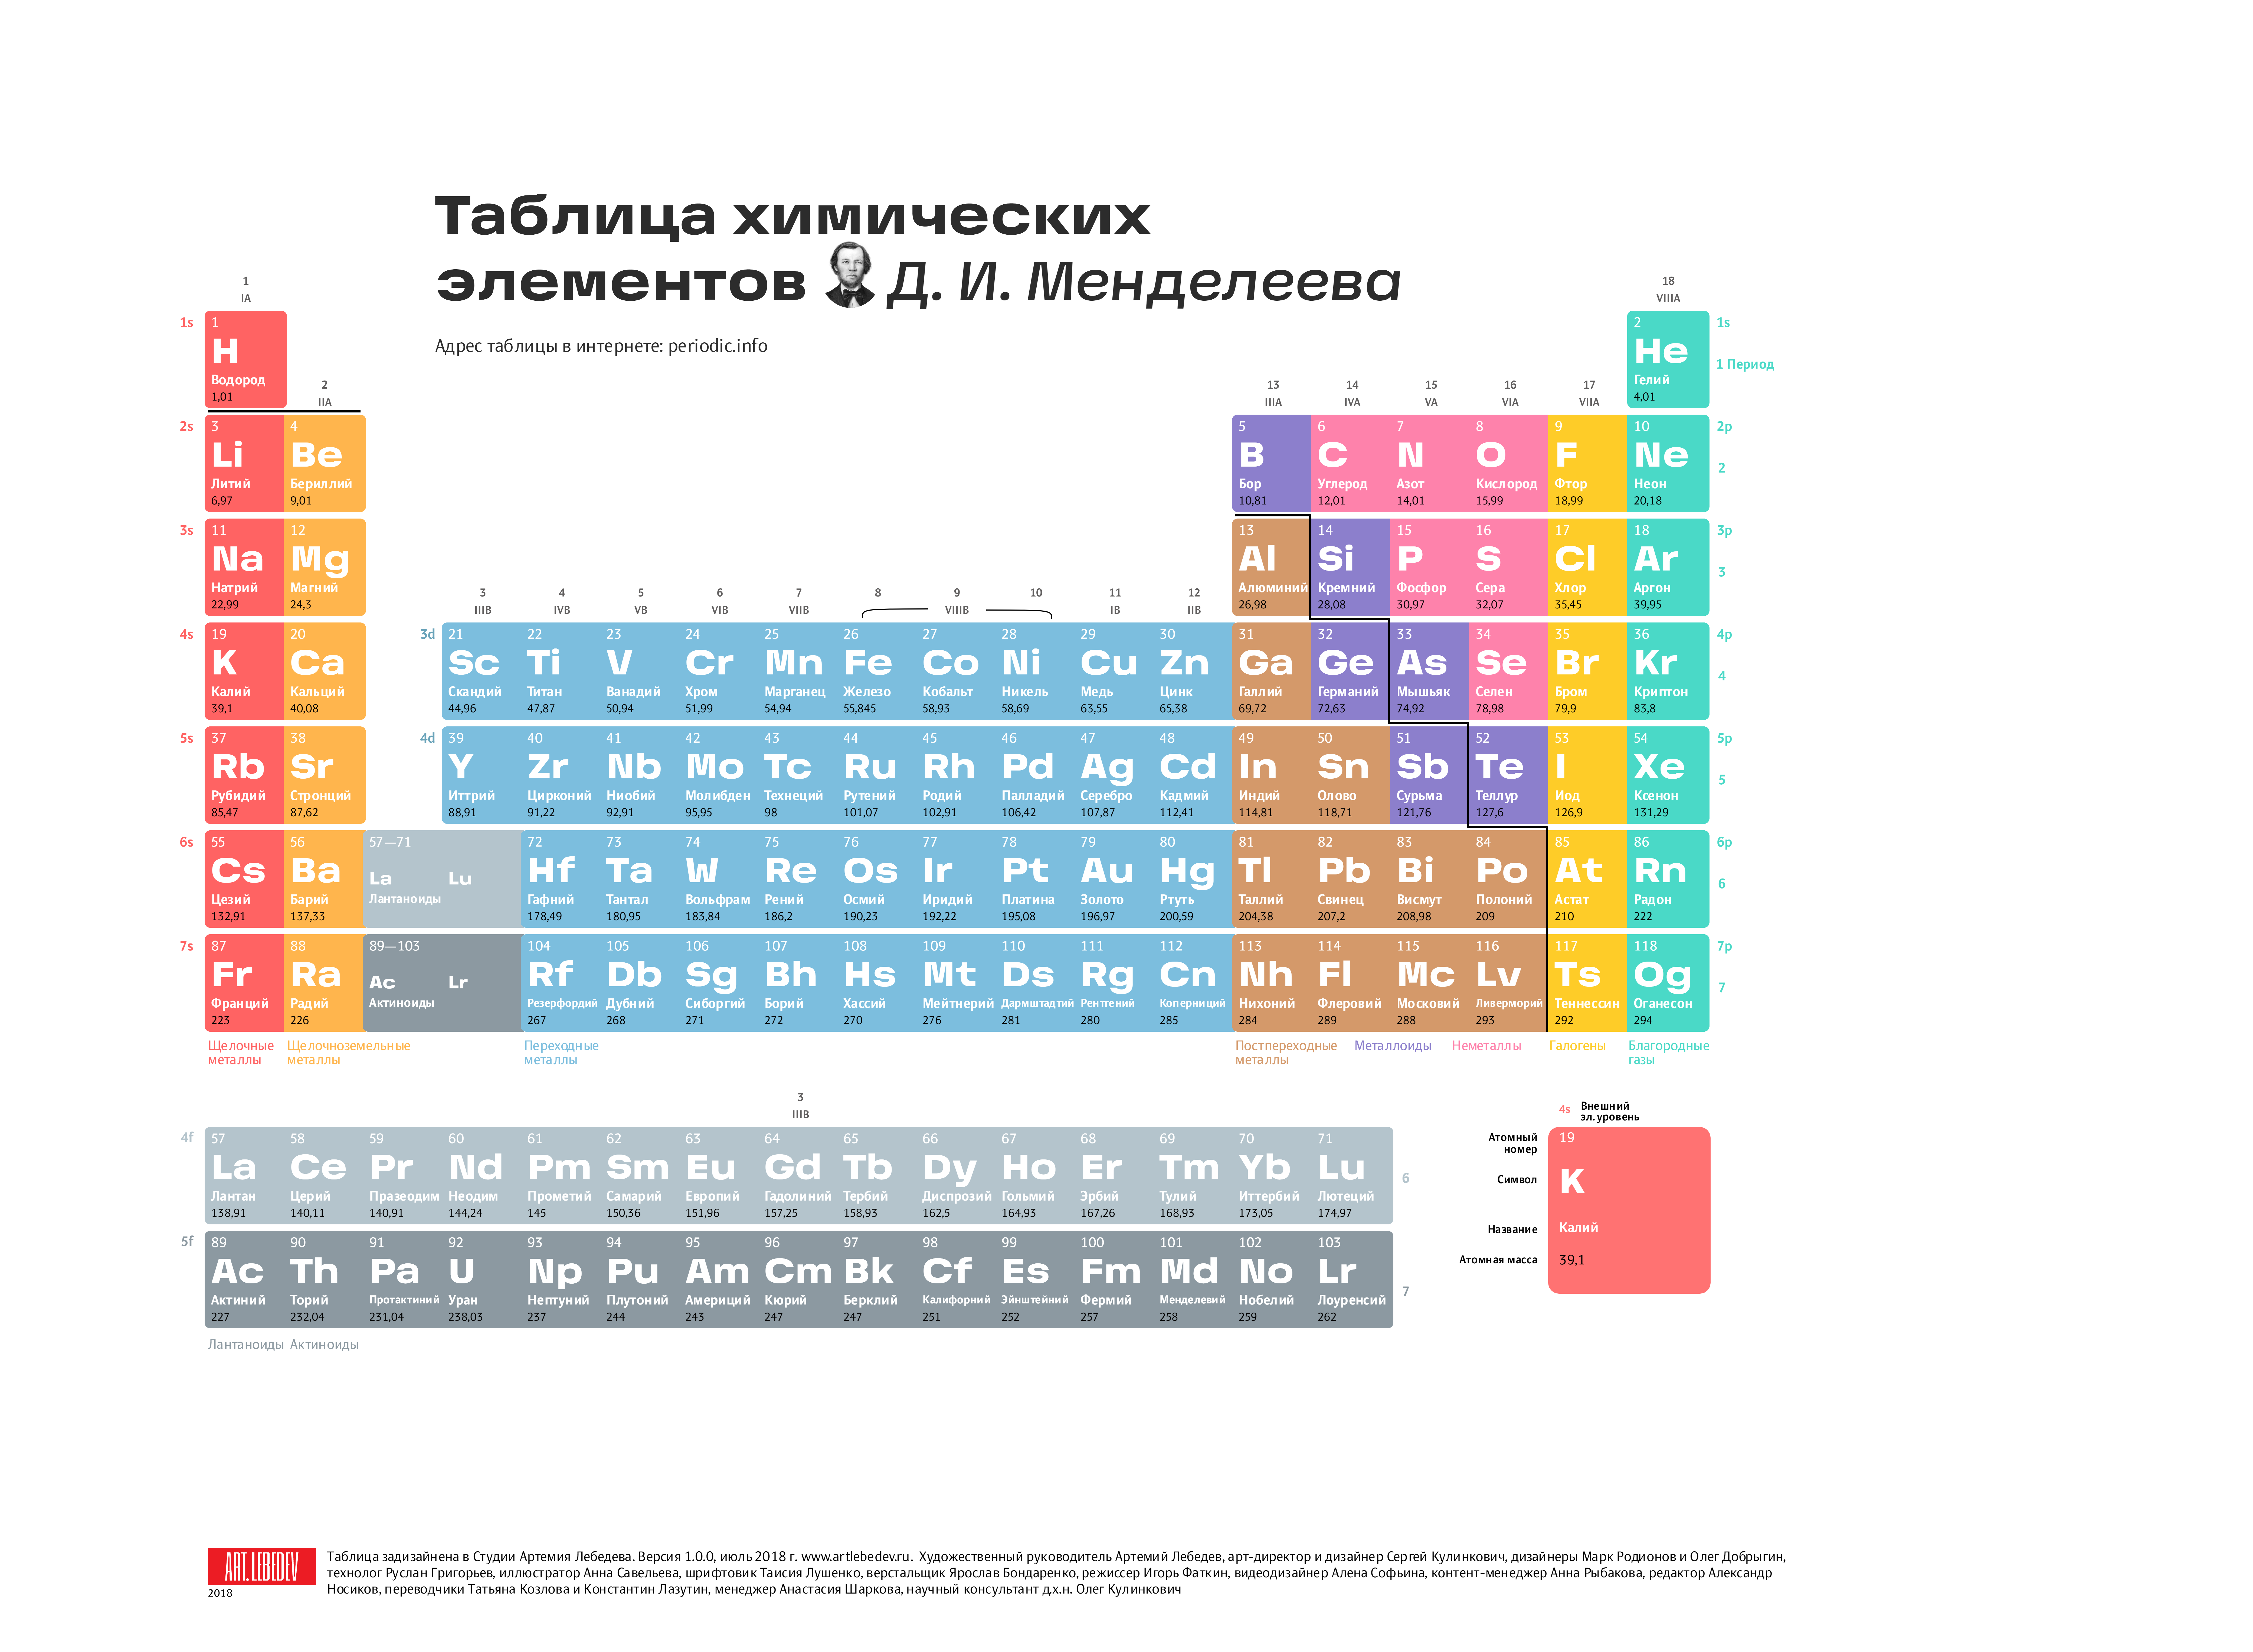 10 элементов от 20 до 20. Современная таблица Менделеева 118 элементов. Длиннопериодный вариант таблицы Менделеева. Первые 20 элементов таблицы Менделеева. Химия просто таблица Менделеева 2.0.